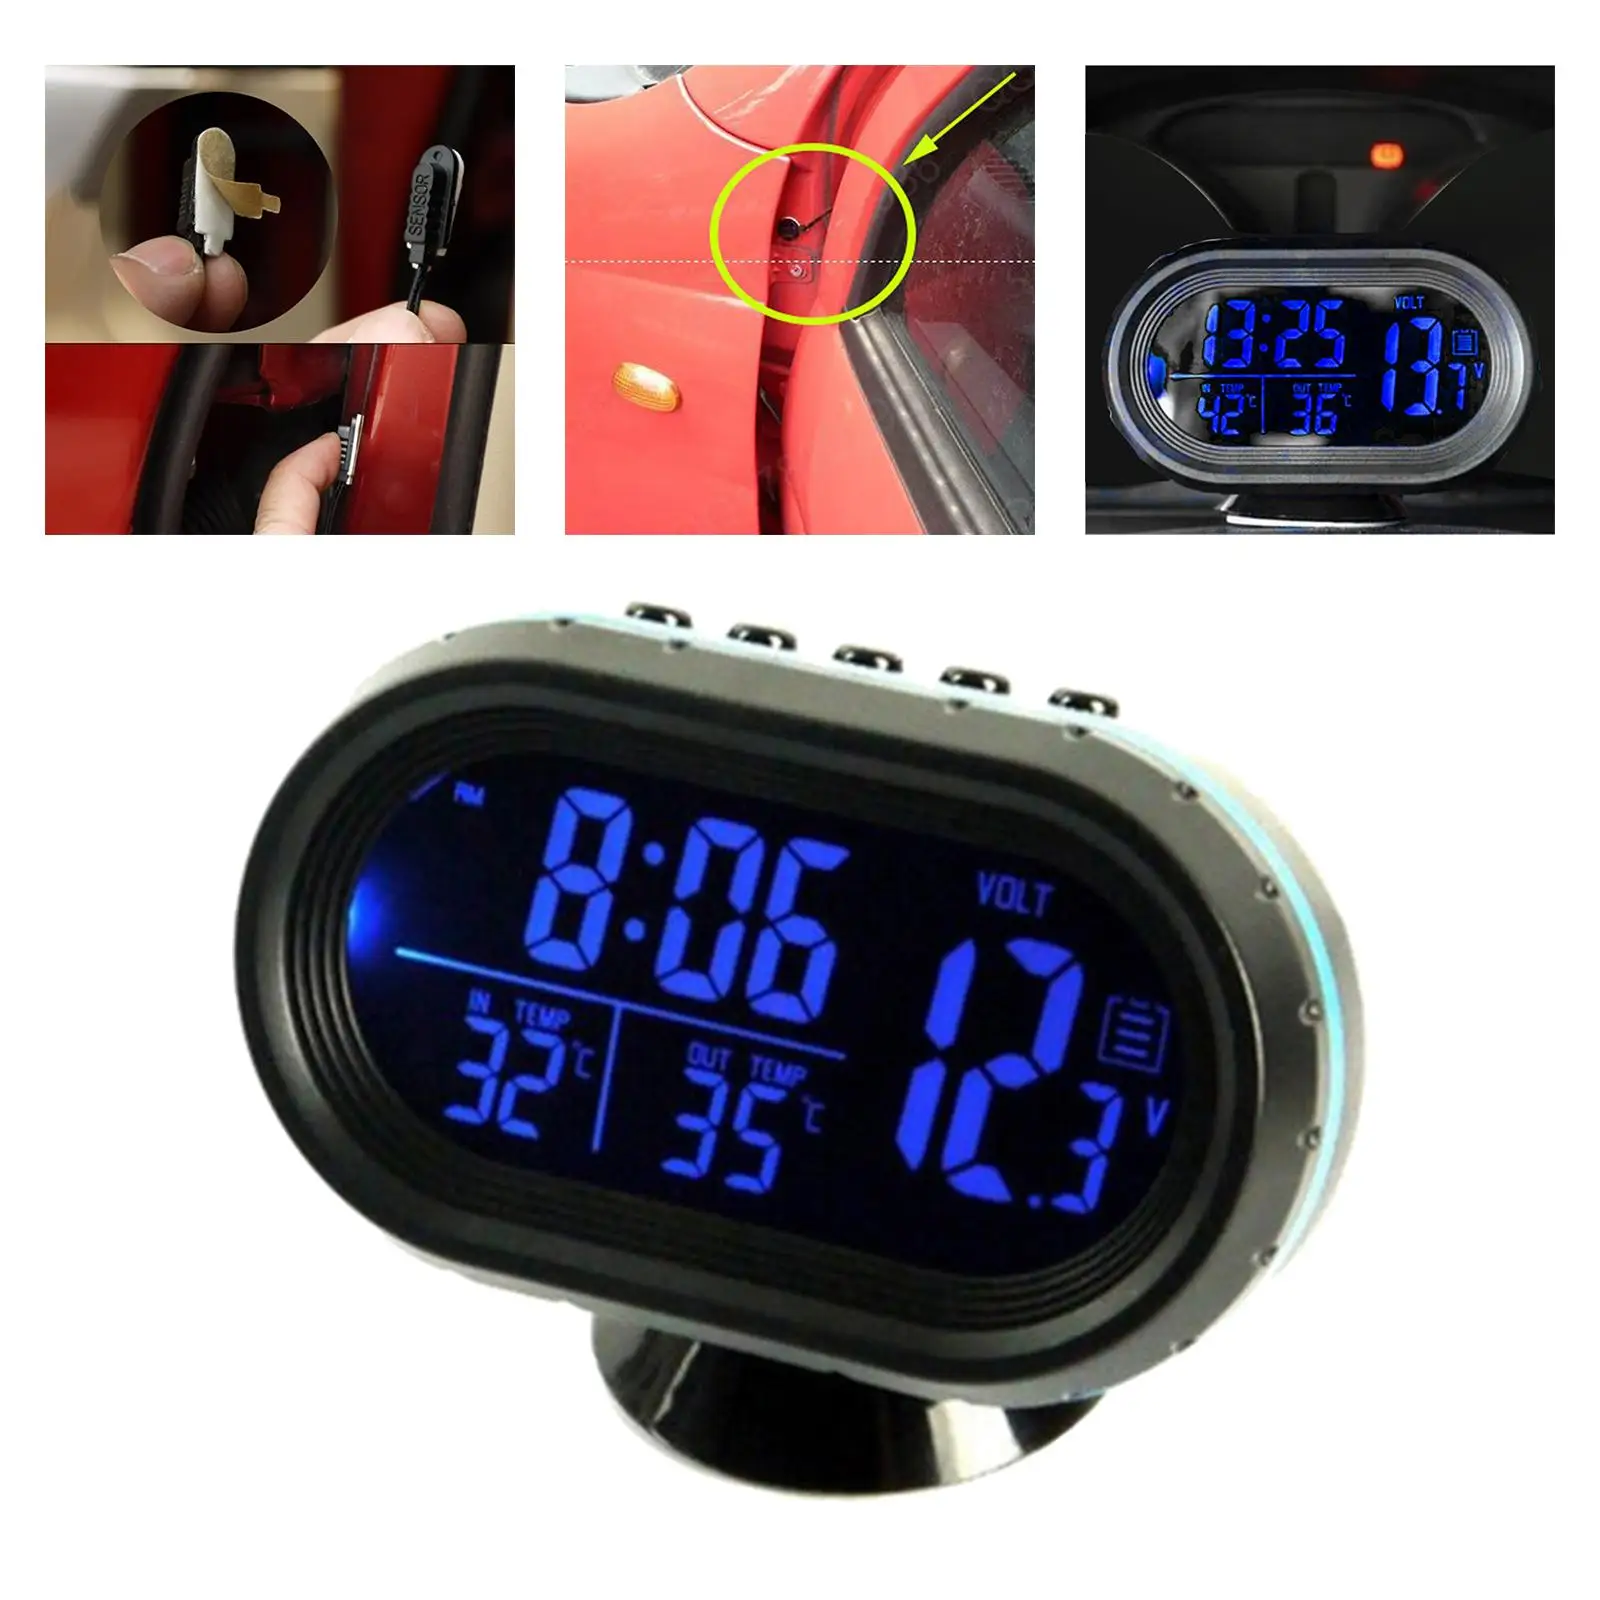 12V voiture thermomètre numérique Voltmètre horloge alarme